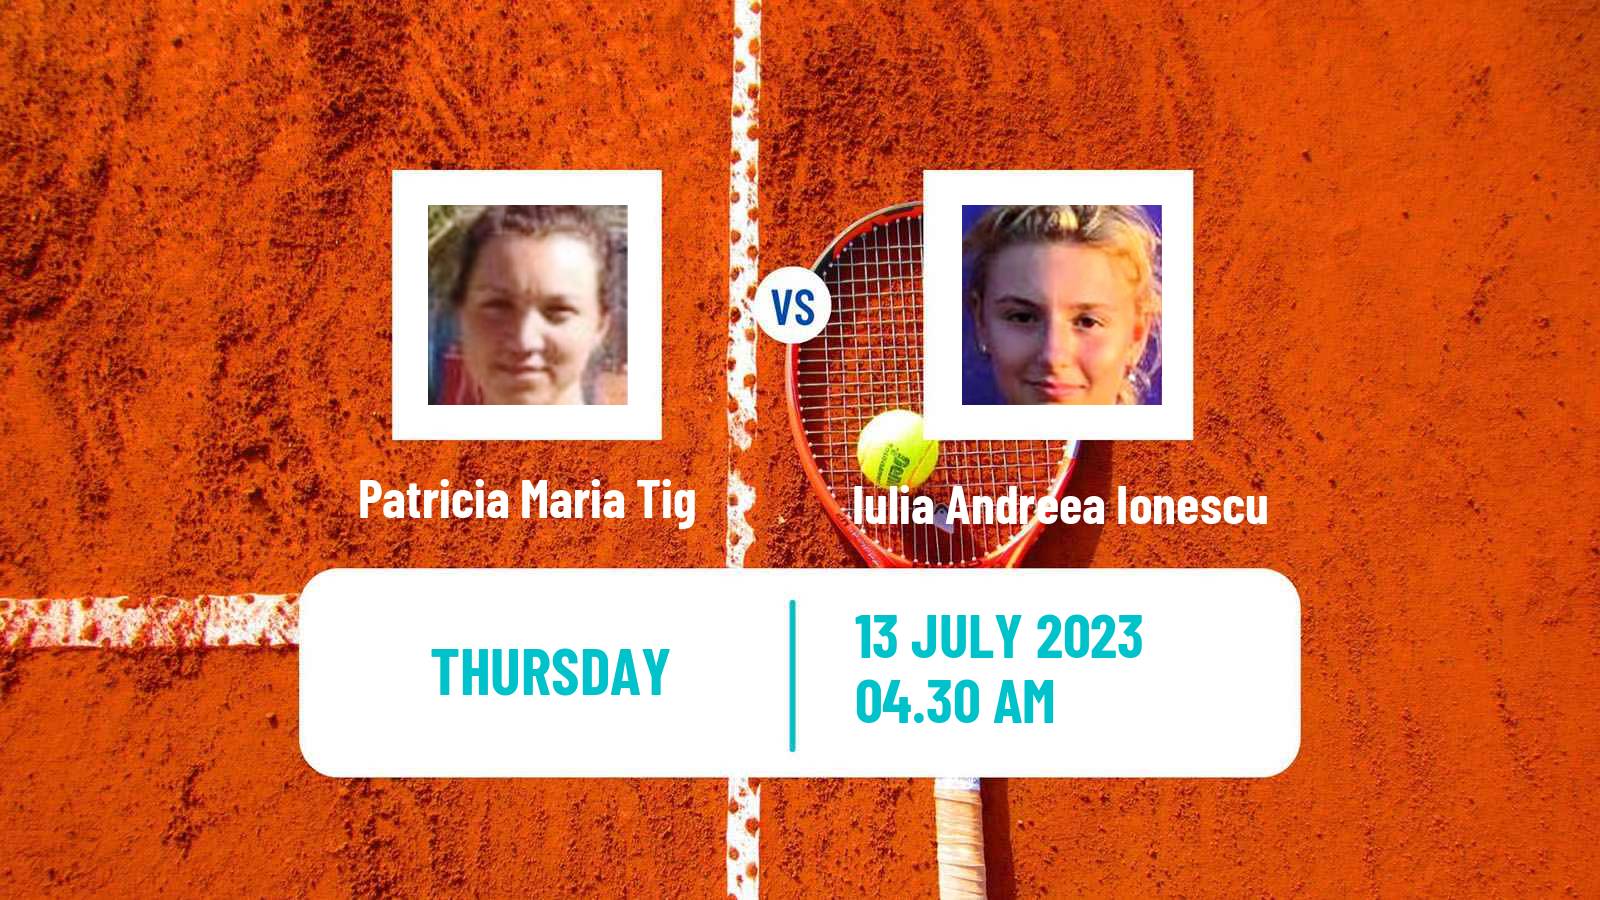 Tennis ITF W15 Bacau Women Patricia Maria Tig - Iulia Andreea Ionescu